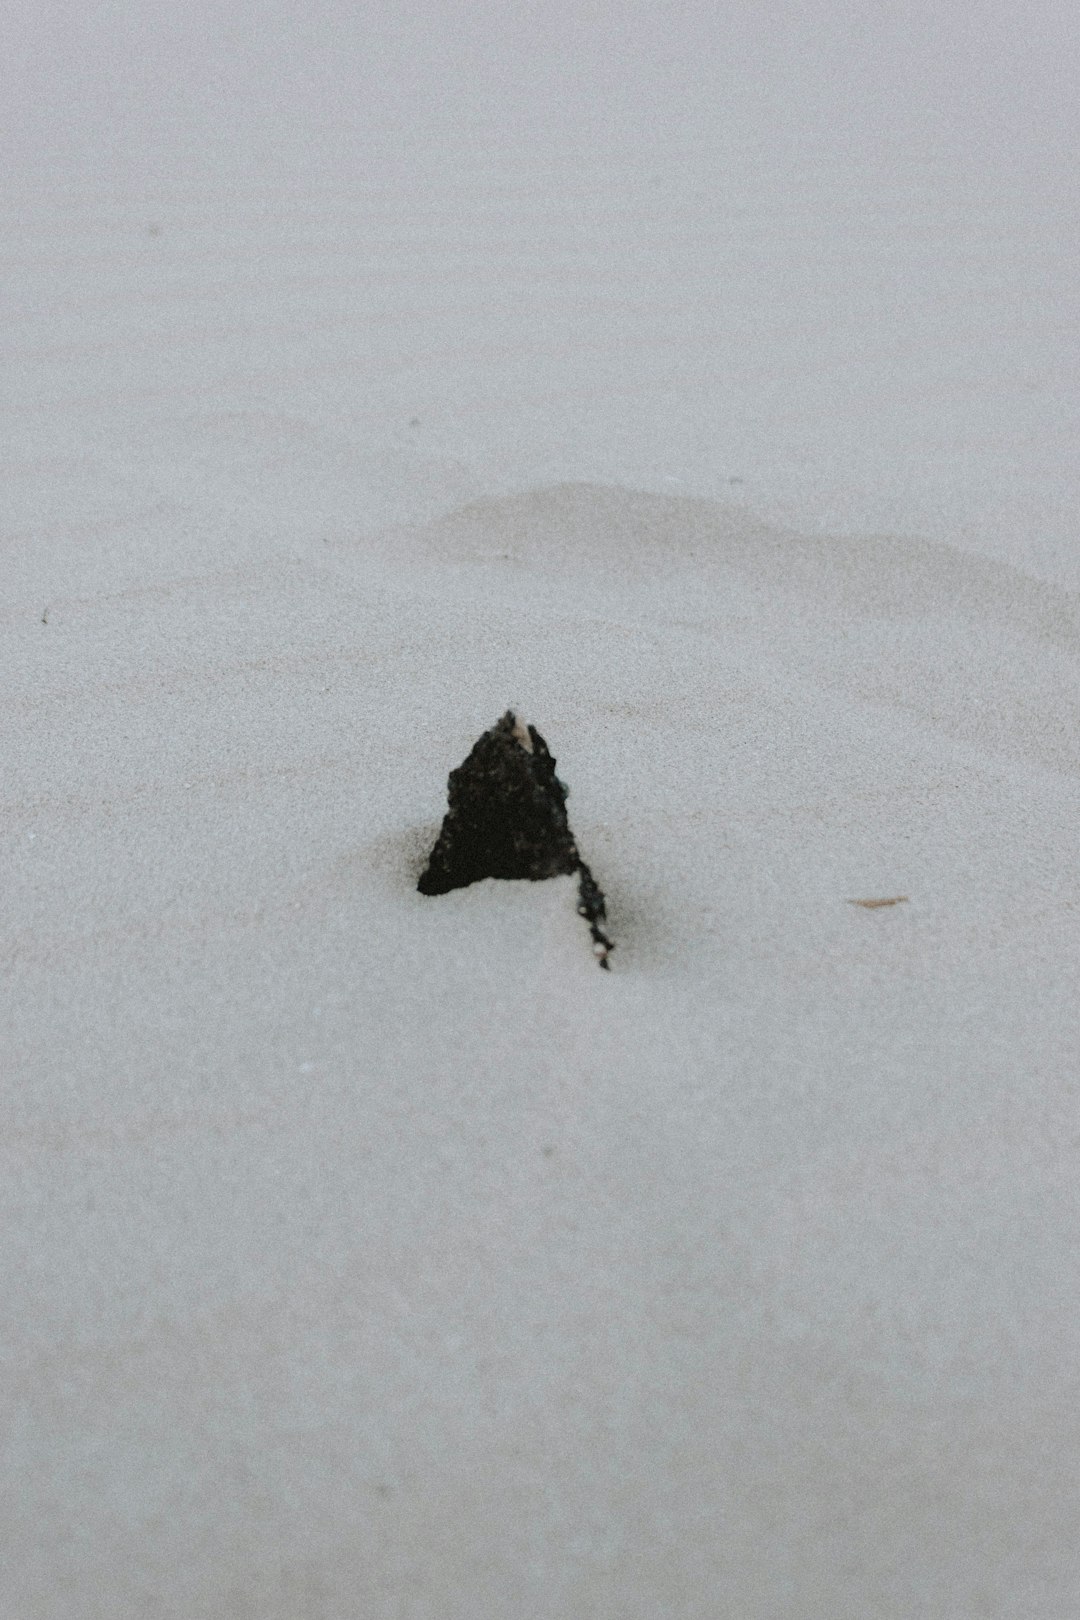 black rock on white snow